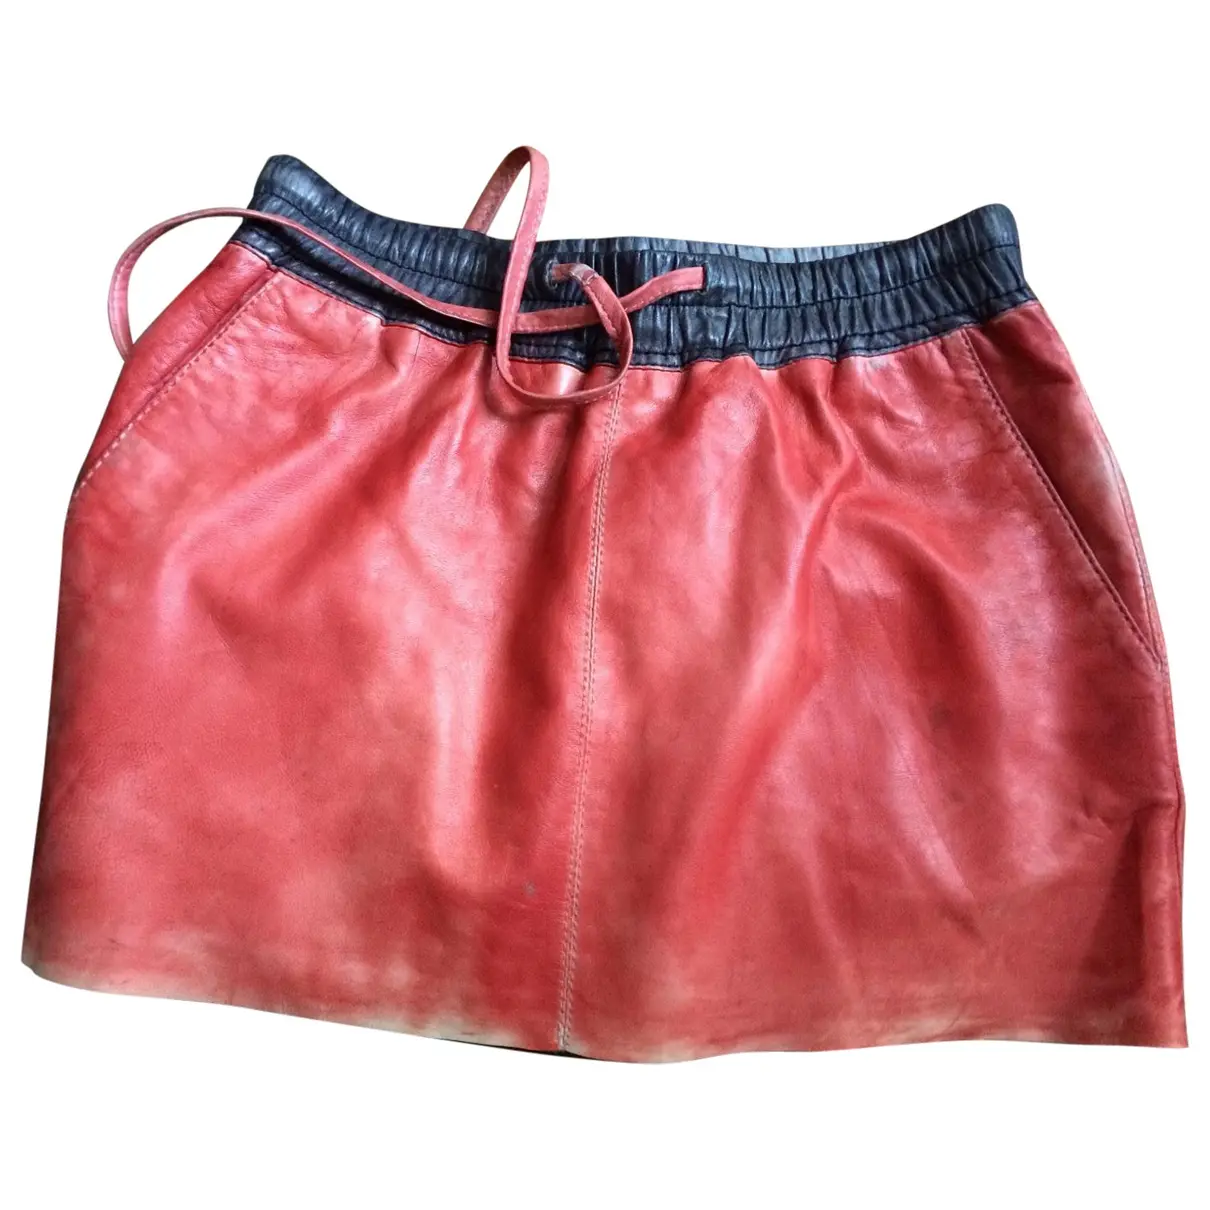 Red Leather Skirt Leon & Harper